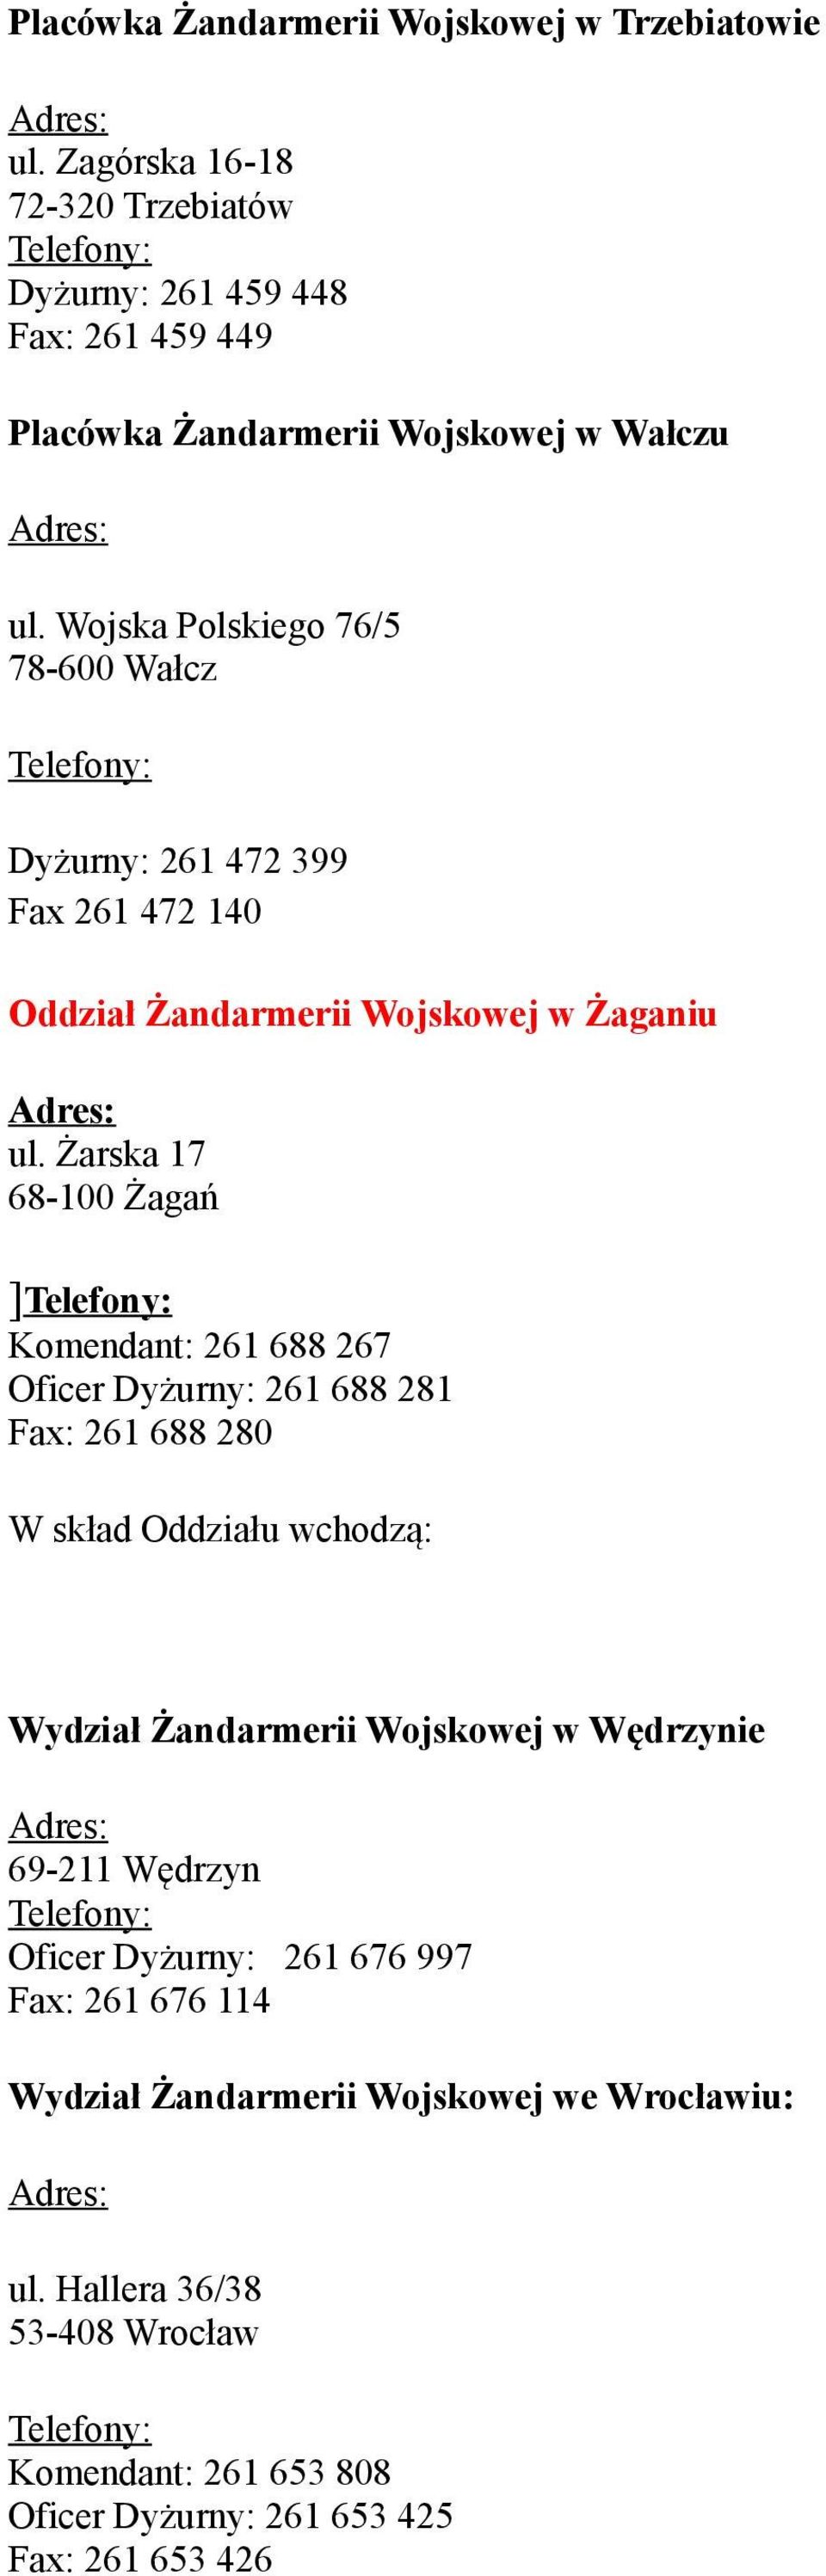 Wojska Polskiego 76/5 78-600 Wałcz Dyżurny: 261 472 399 Fax 261 472 140 Oddział Żandarmerii Wojskowej w Żaganiu ul.